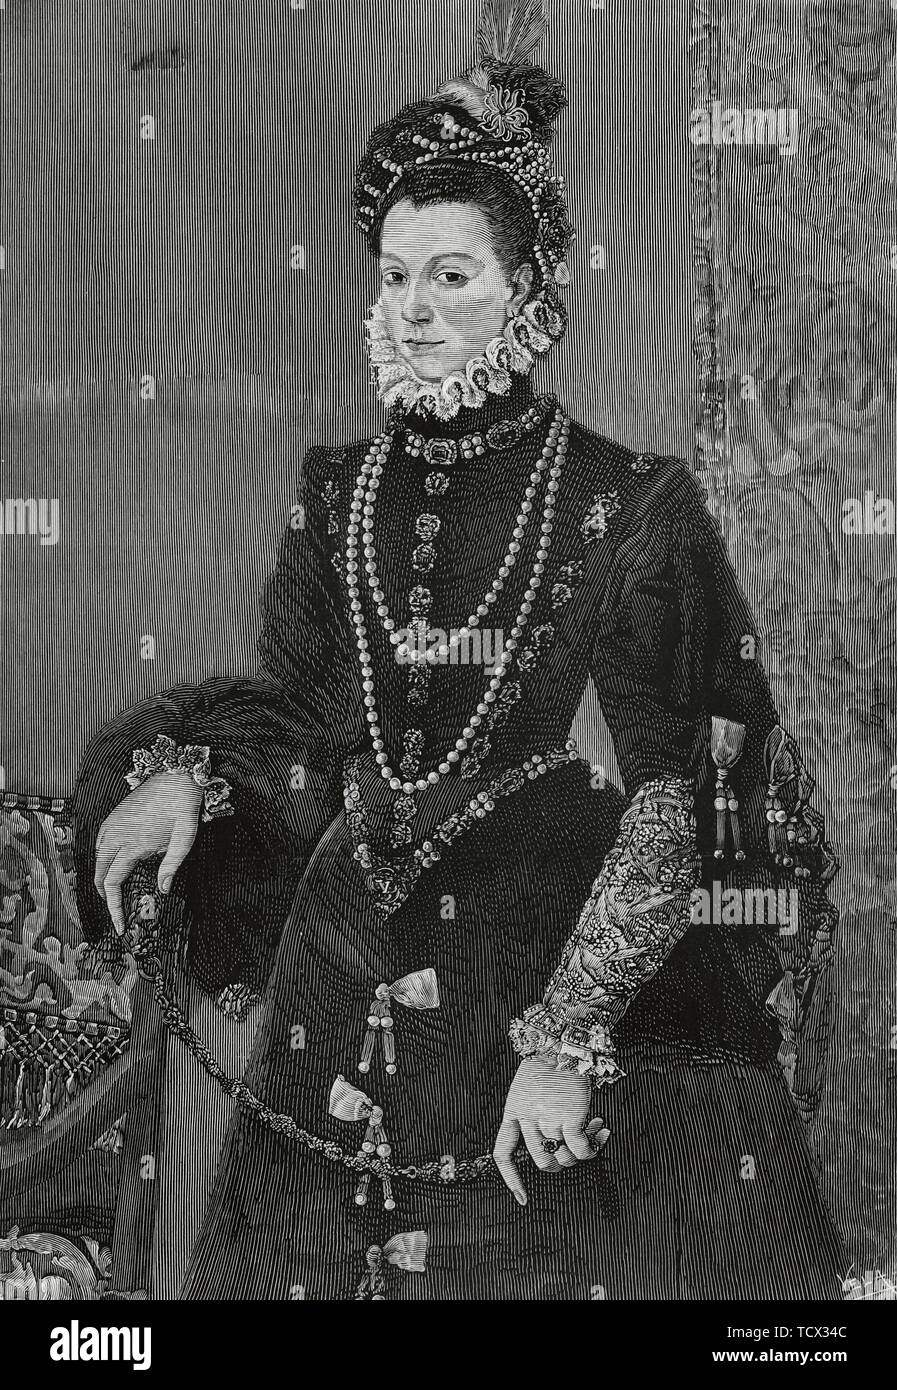 Isabel de Valois (1546-1568). Tercera esposa del rey Felipe II de España y Reina consorte de España. Grabado por Vela a partir de un Cuadro de Juan Pantoja de la Cruz. La Ilustración Española y Americana, 15 de Noviembre de 1882. Stockfoto